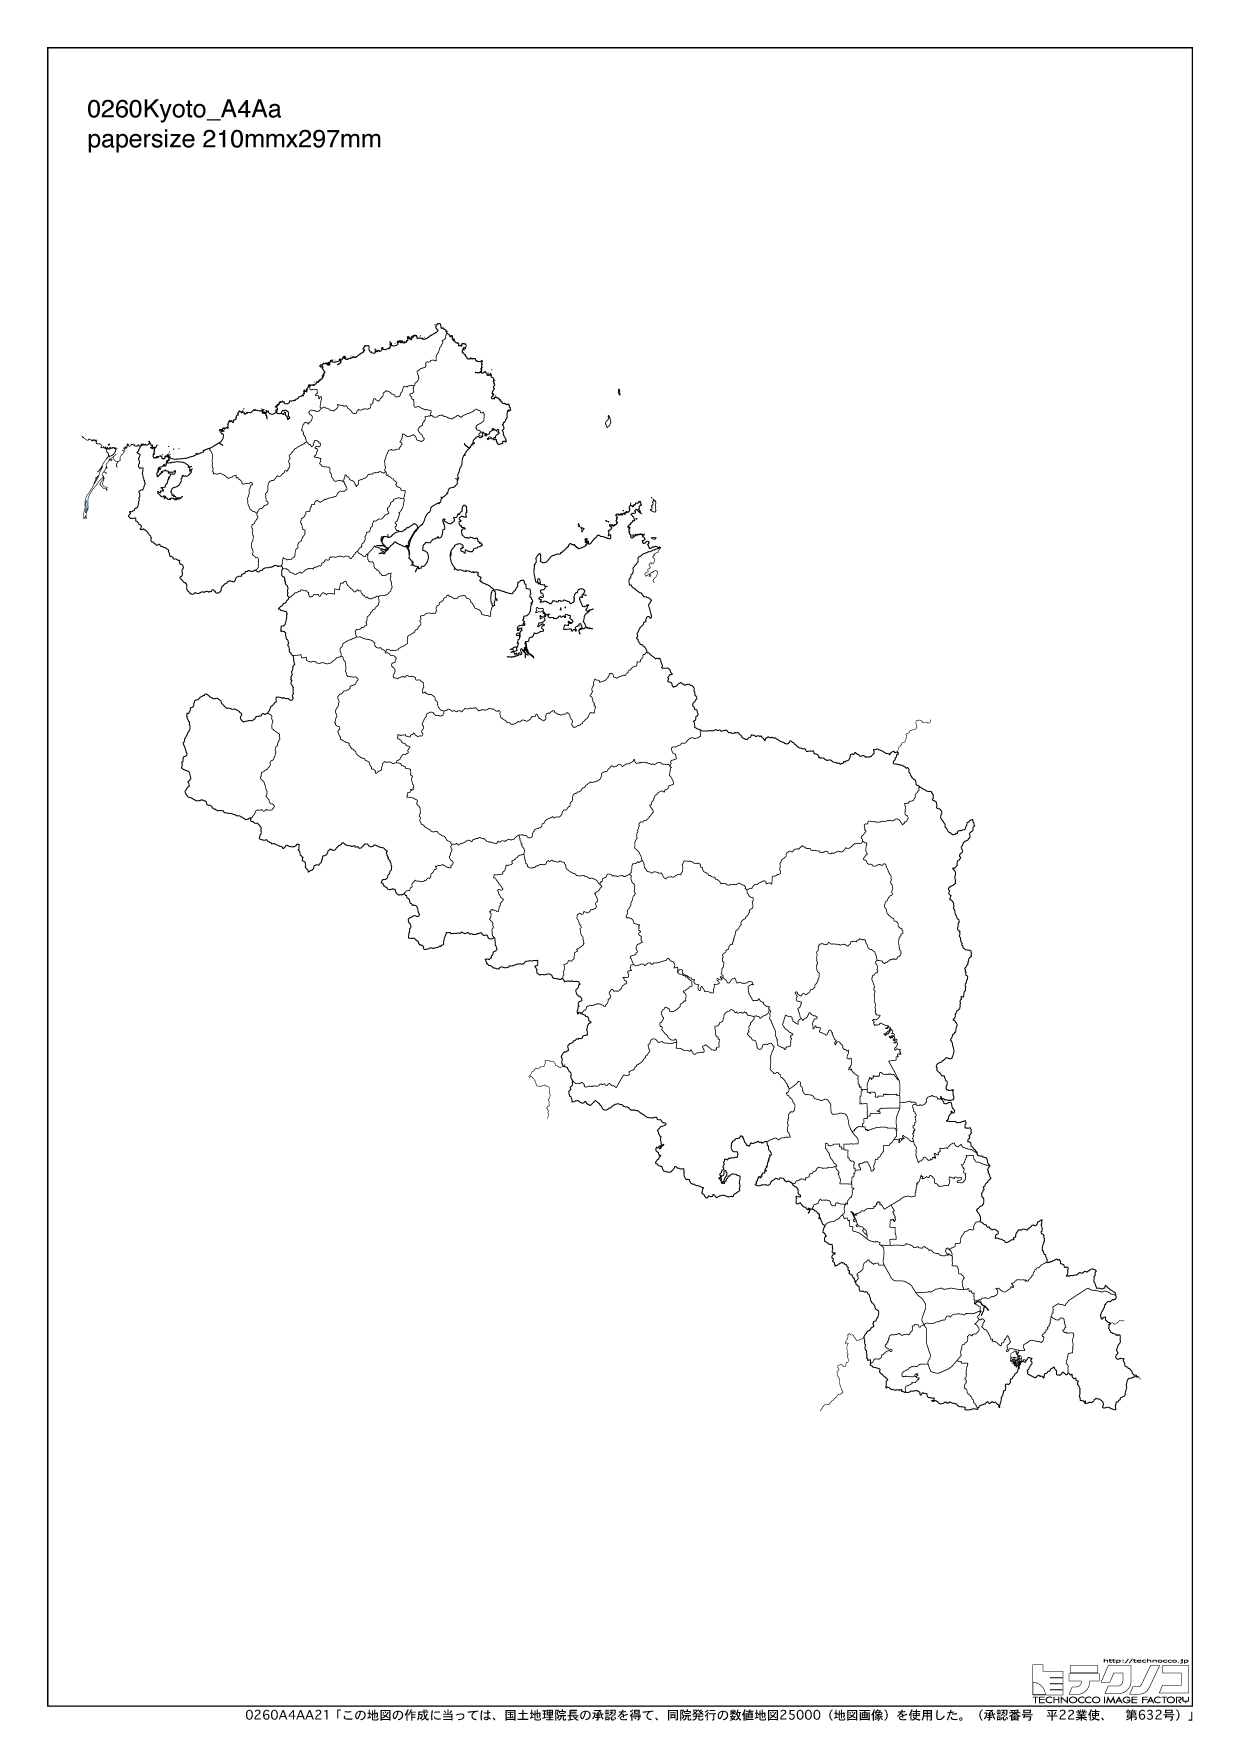 京都府の白地図と市町村の合併情報